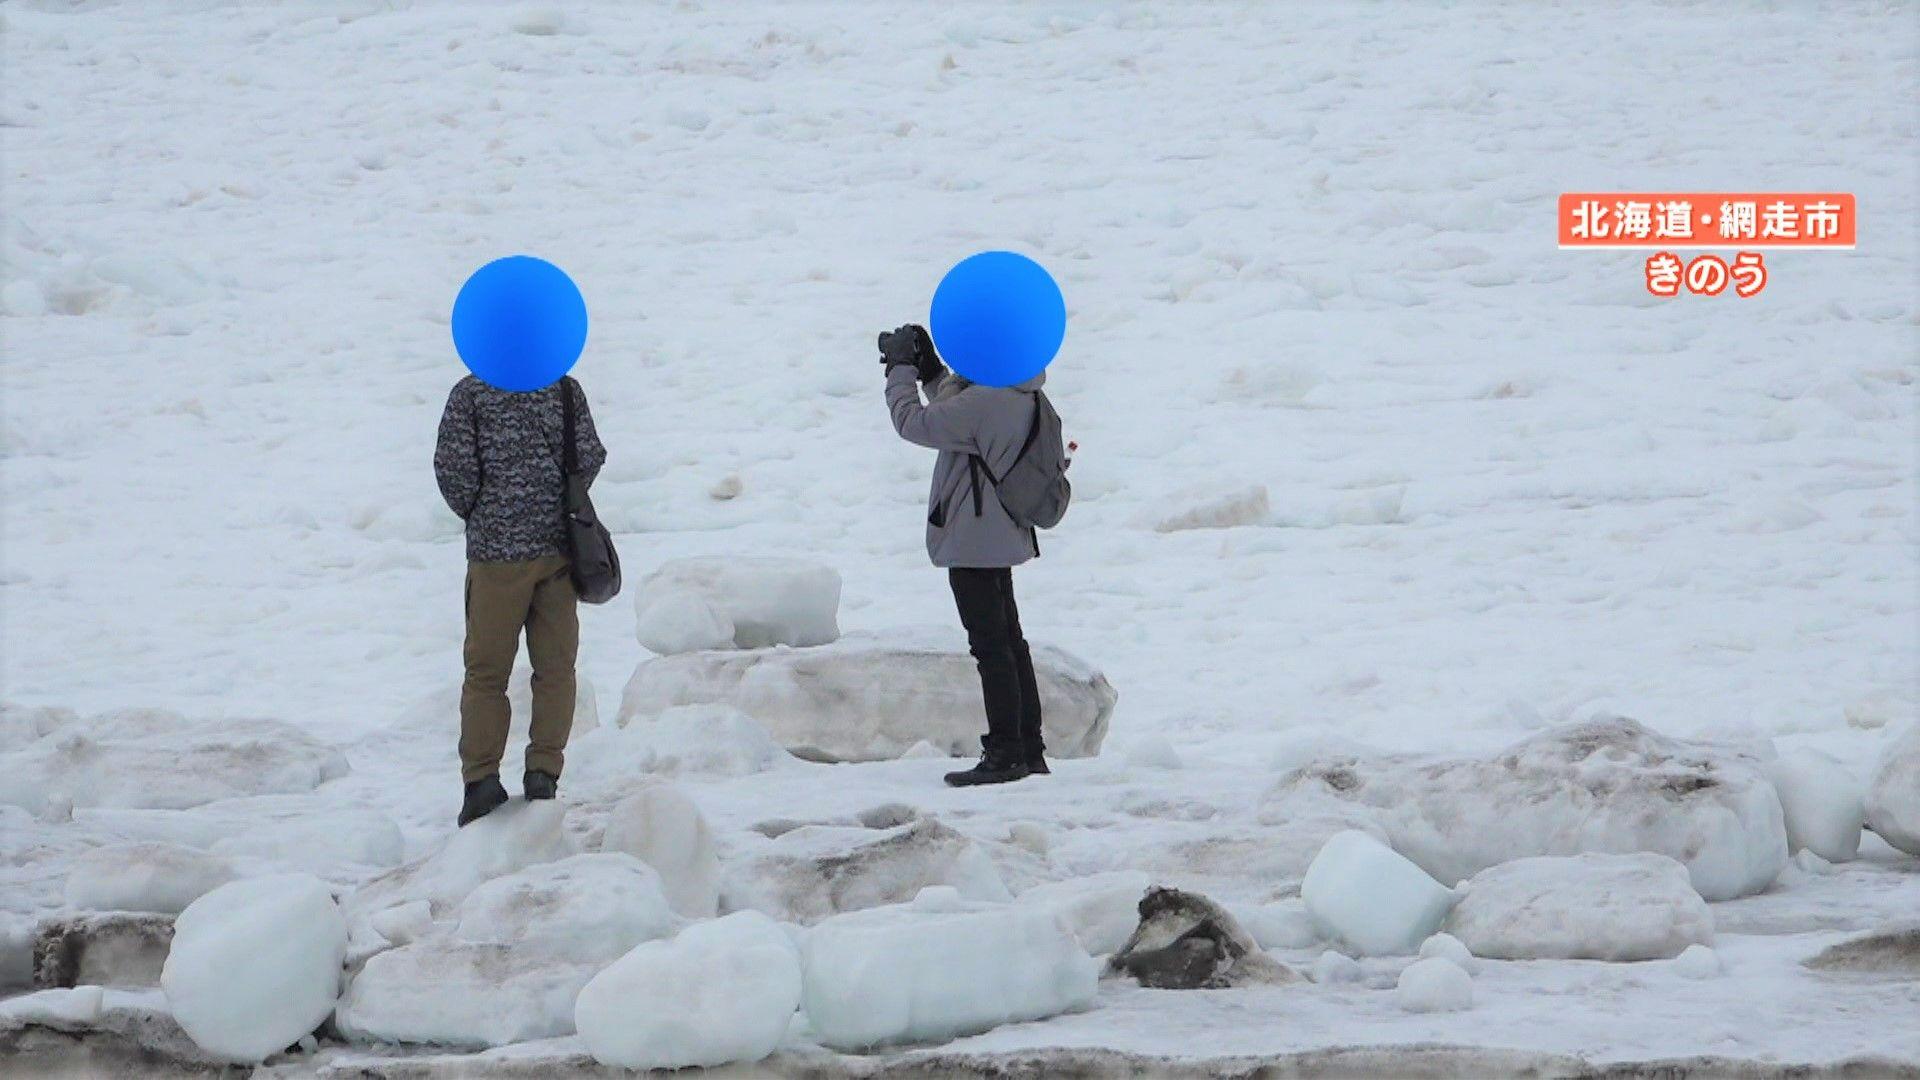 “オホーツク流氷”に乗り写真撮影する危険行為相次ぐ「落ちると助からない」救助難しく15分で死に至る可能性も